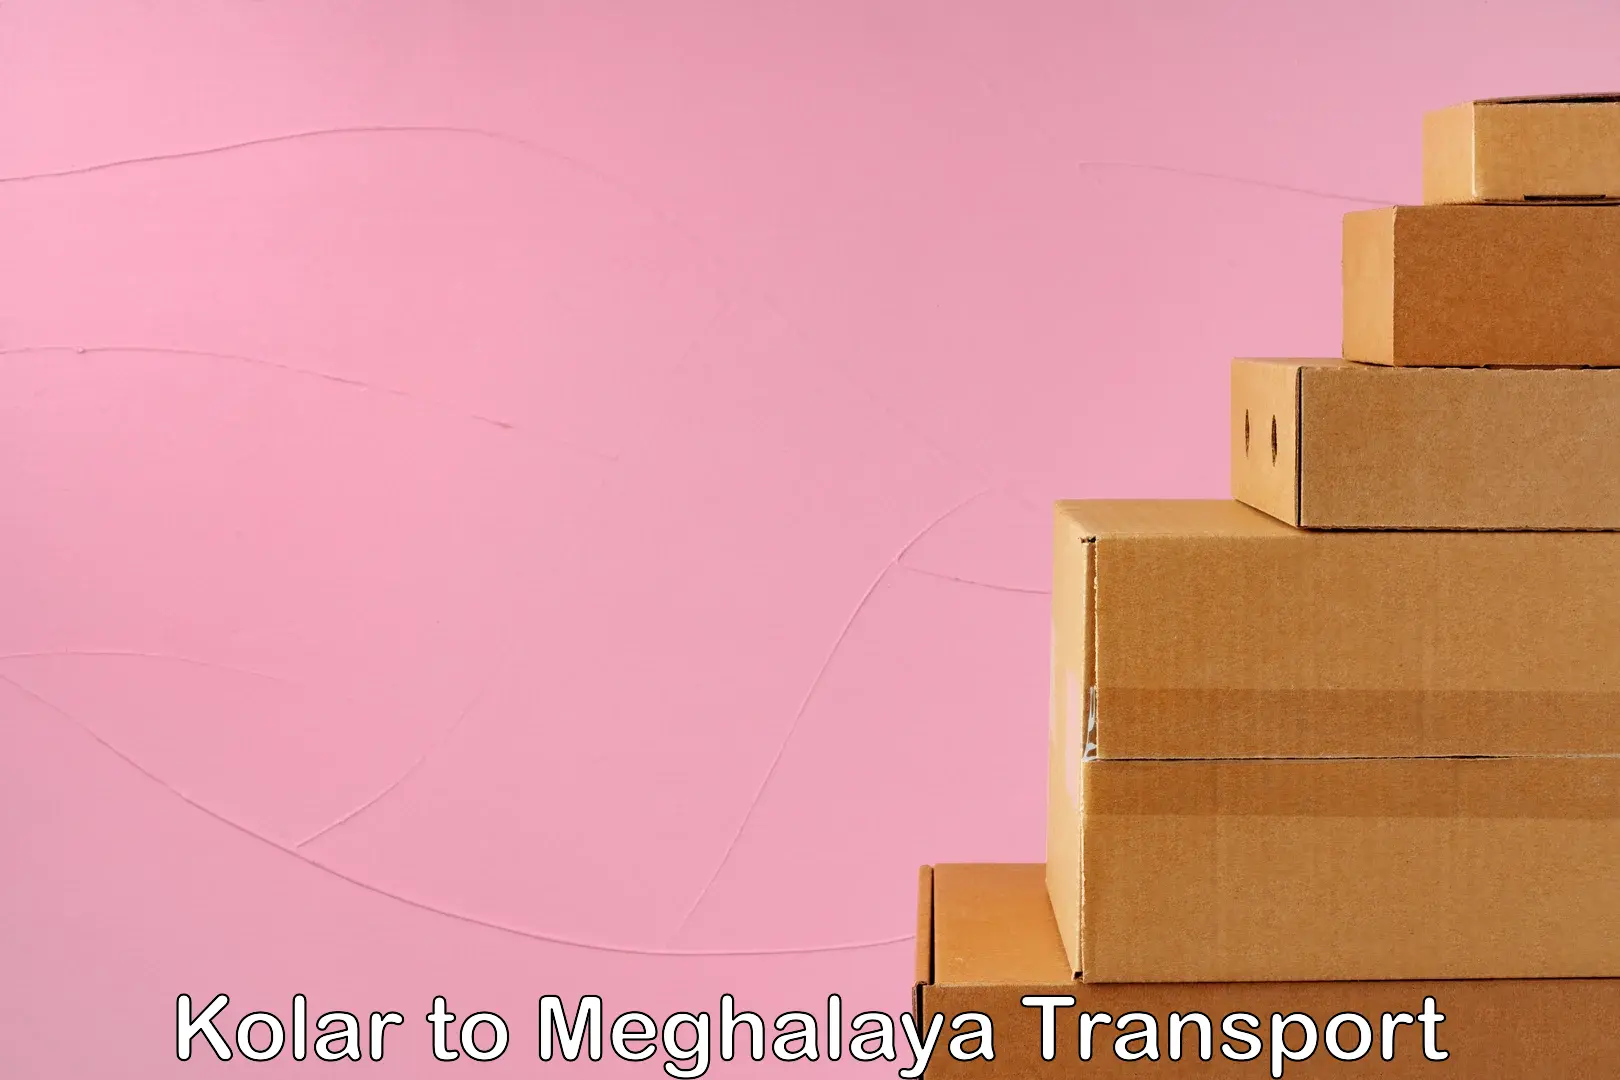 Container transport service Kolar to Cherrapunji